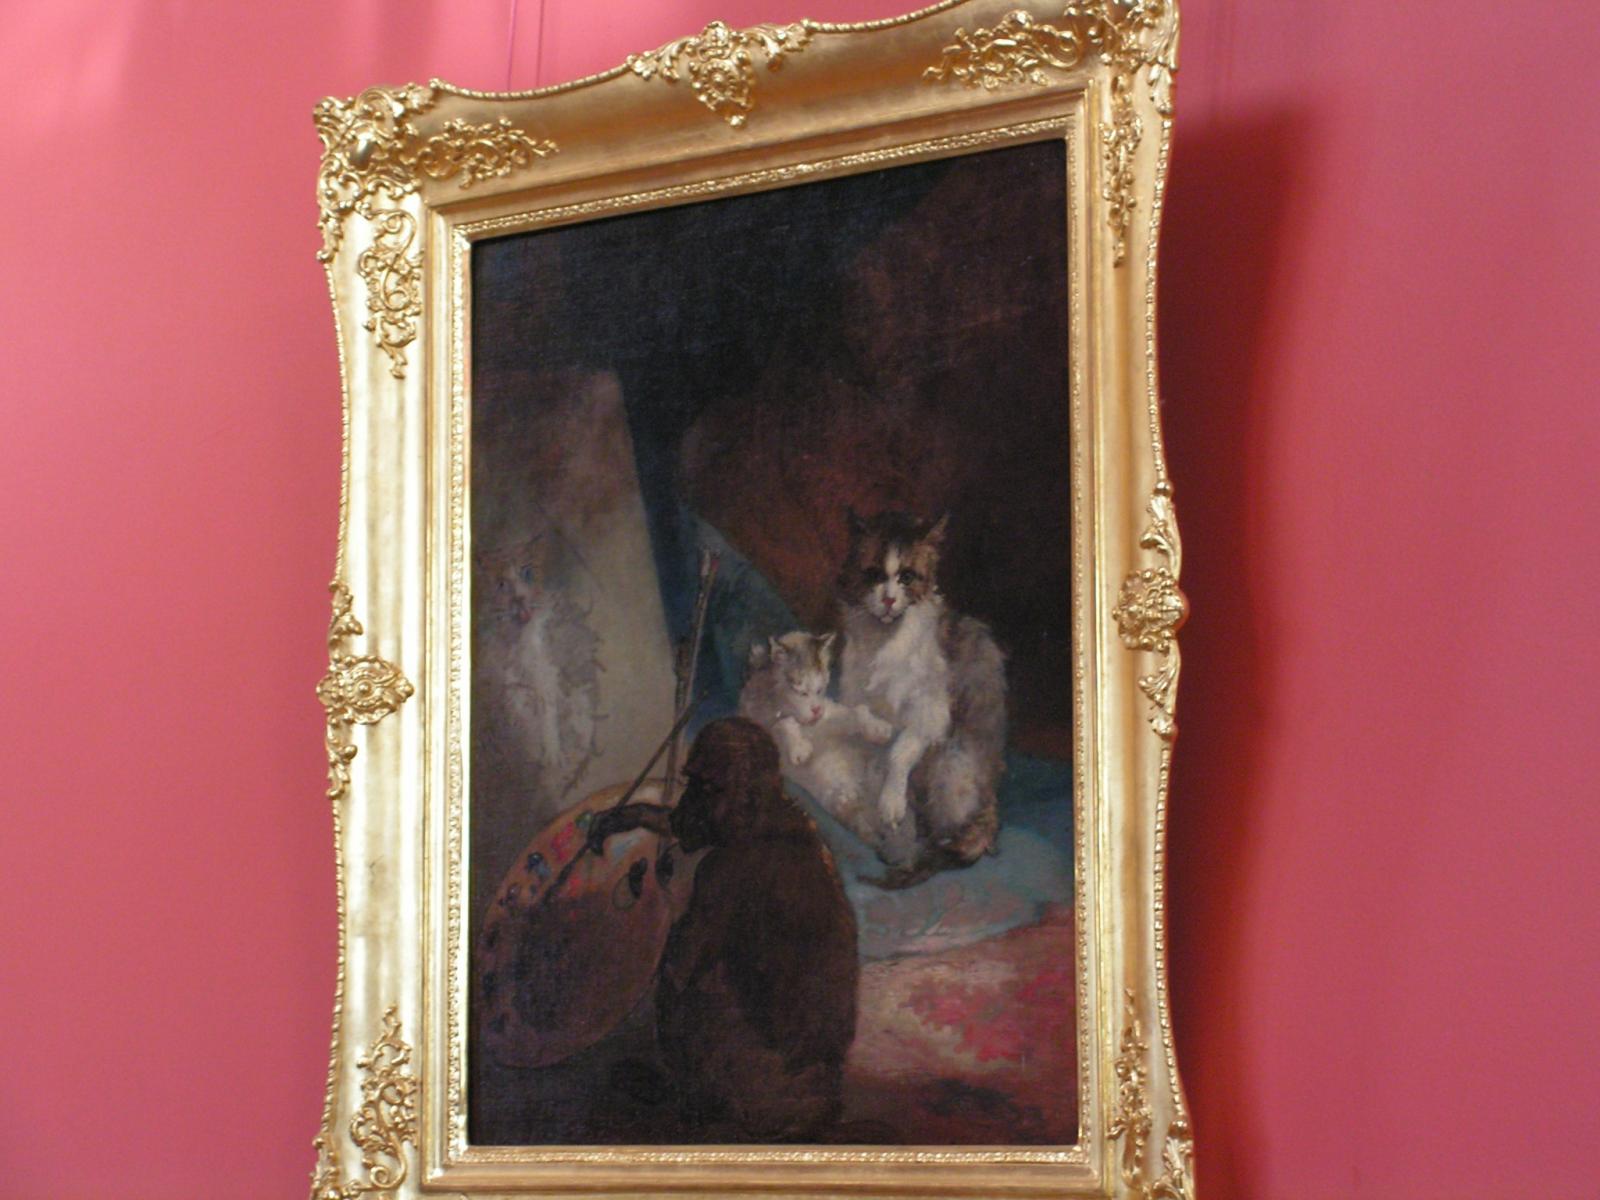 А во дворце Юсуповых в детской висит картина про кошек.:-)